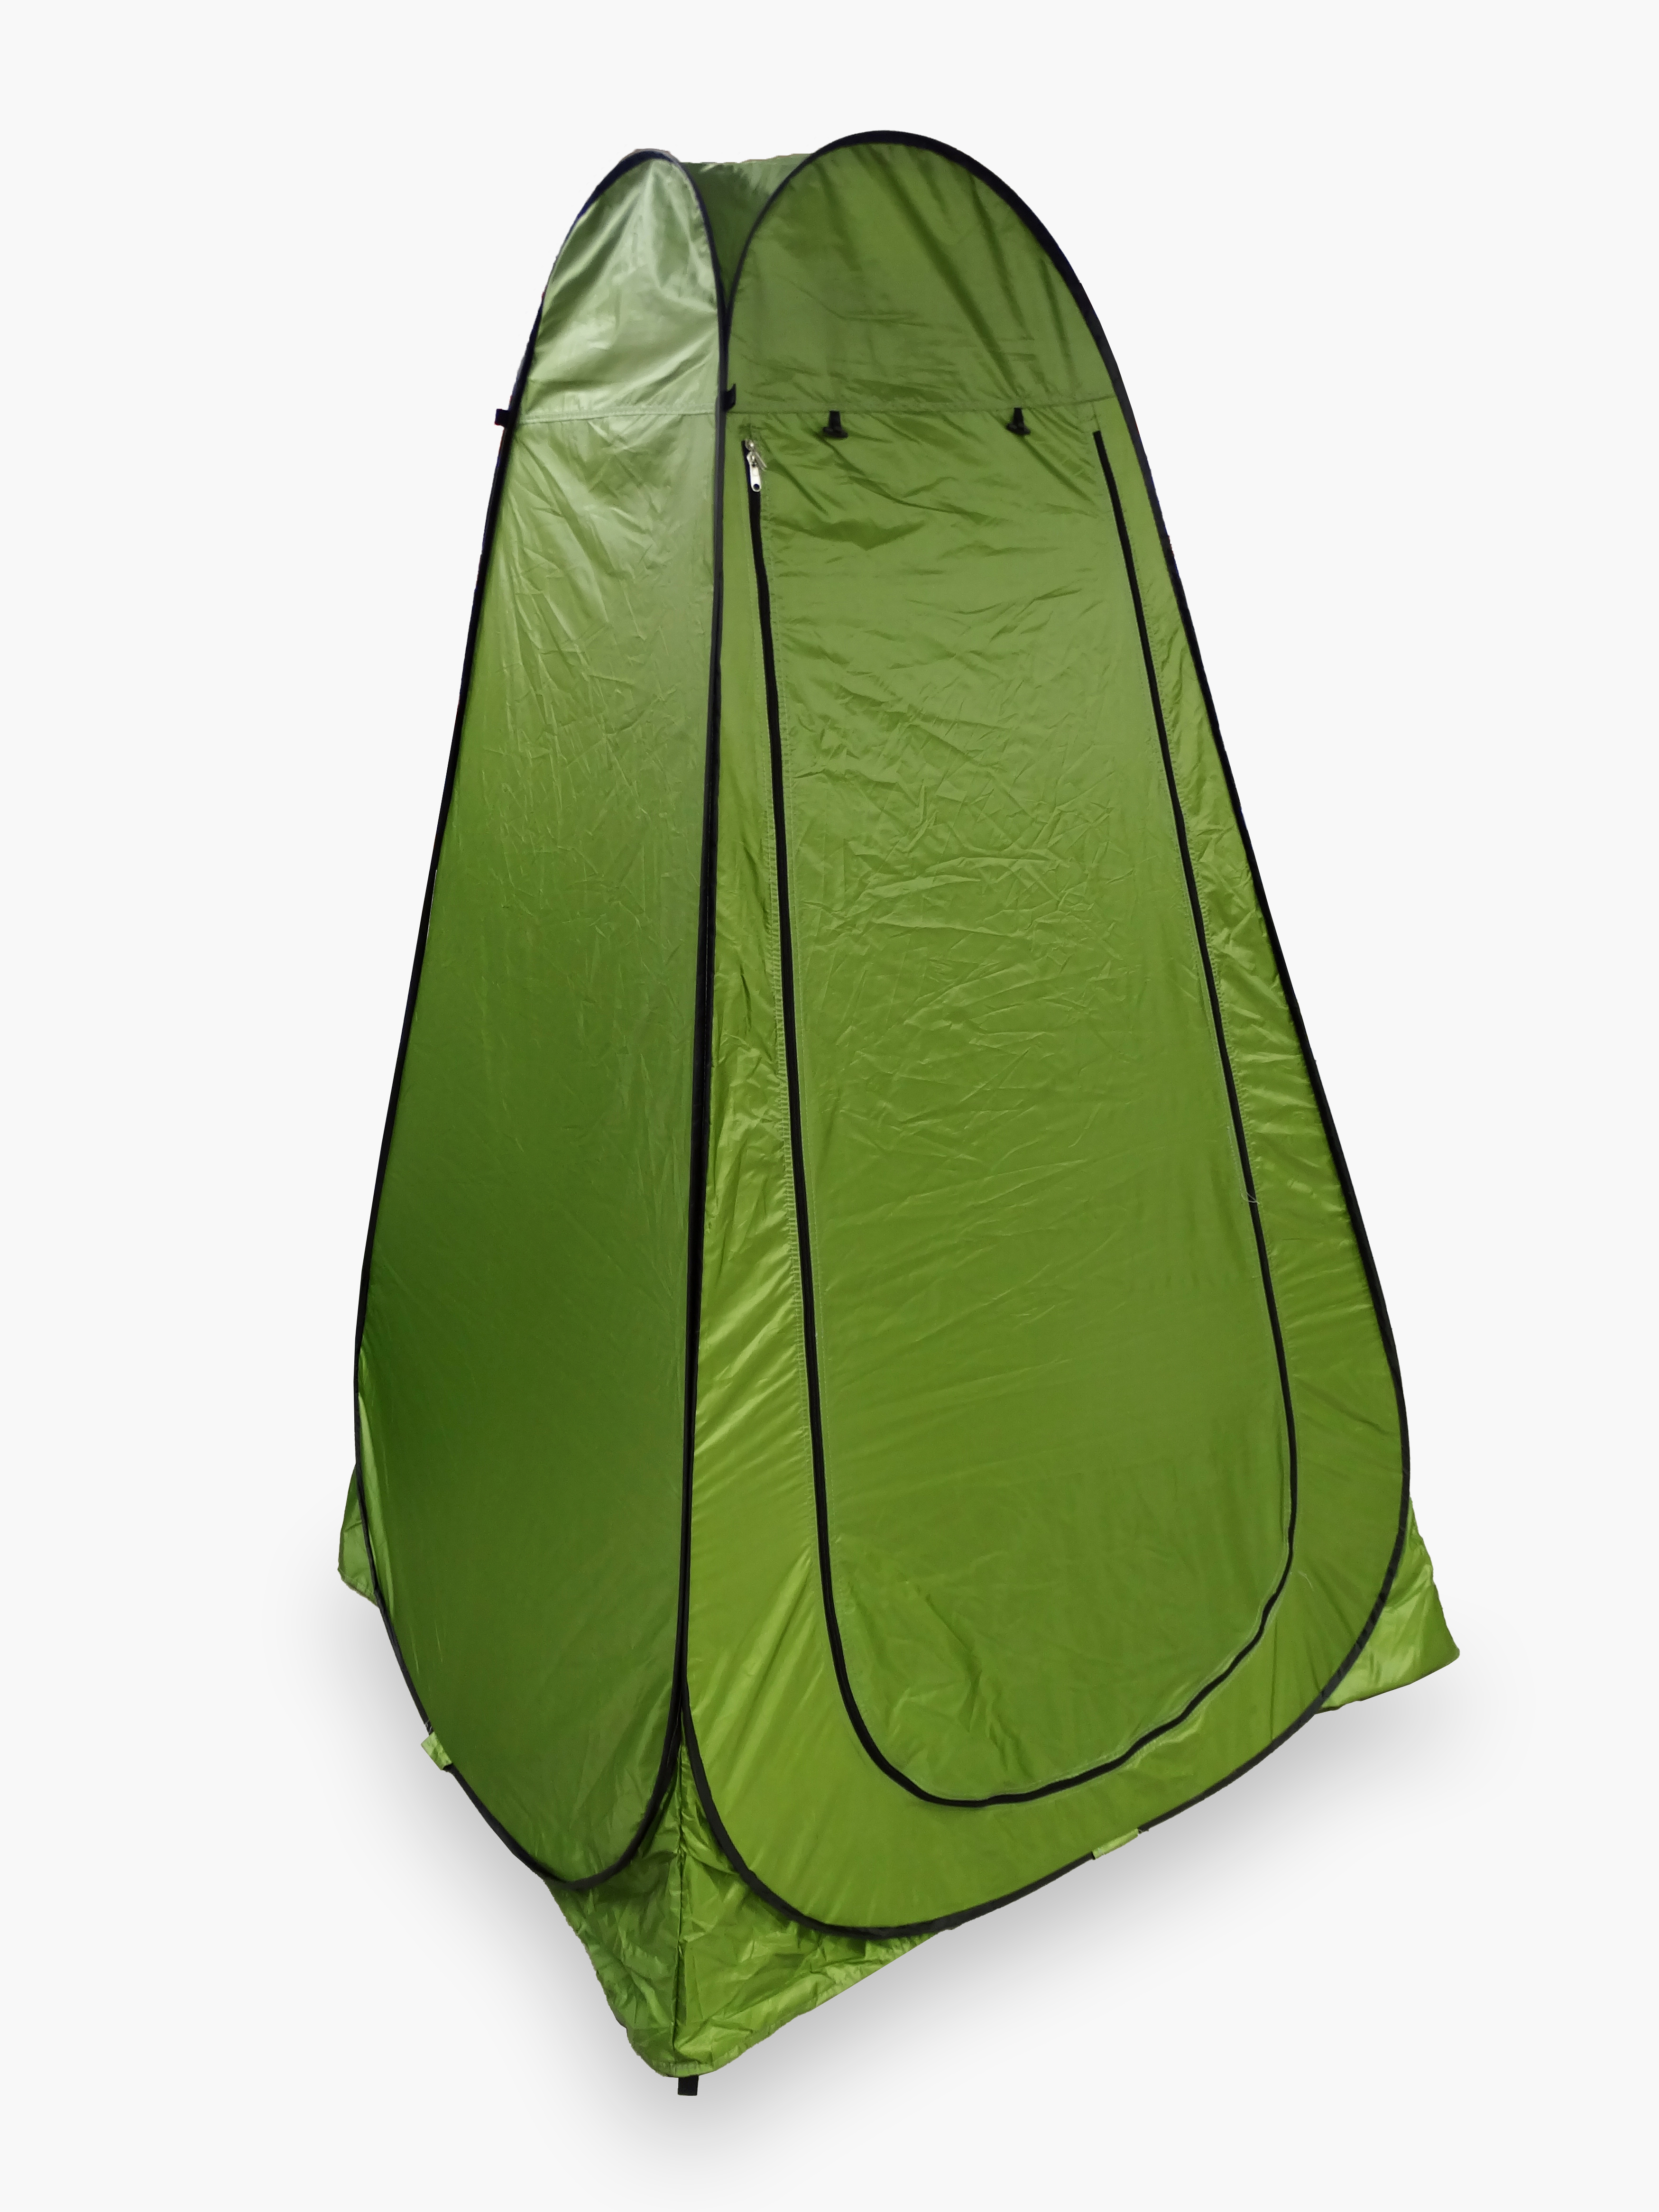 ПалаткадуштуалетLANYUZ1501соднимокном,колышкамиирастяжками(150х150х190см)туристическаяавтоматическаябезднавосьмерка(Зеленая)